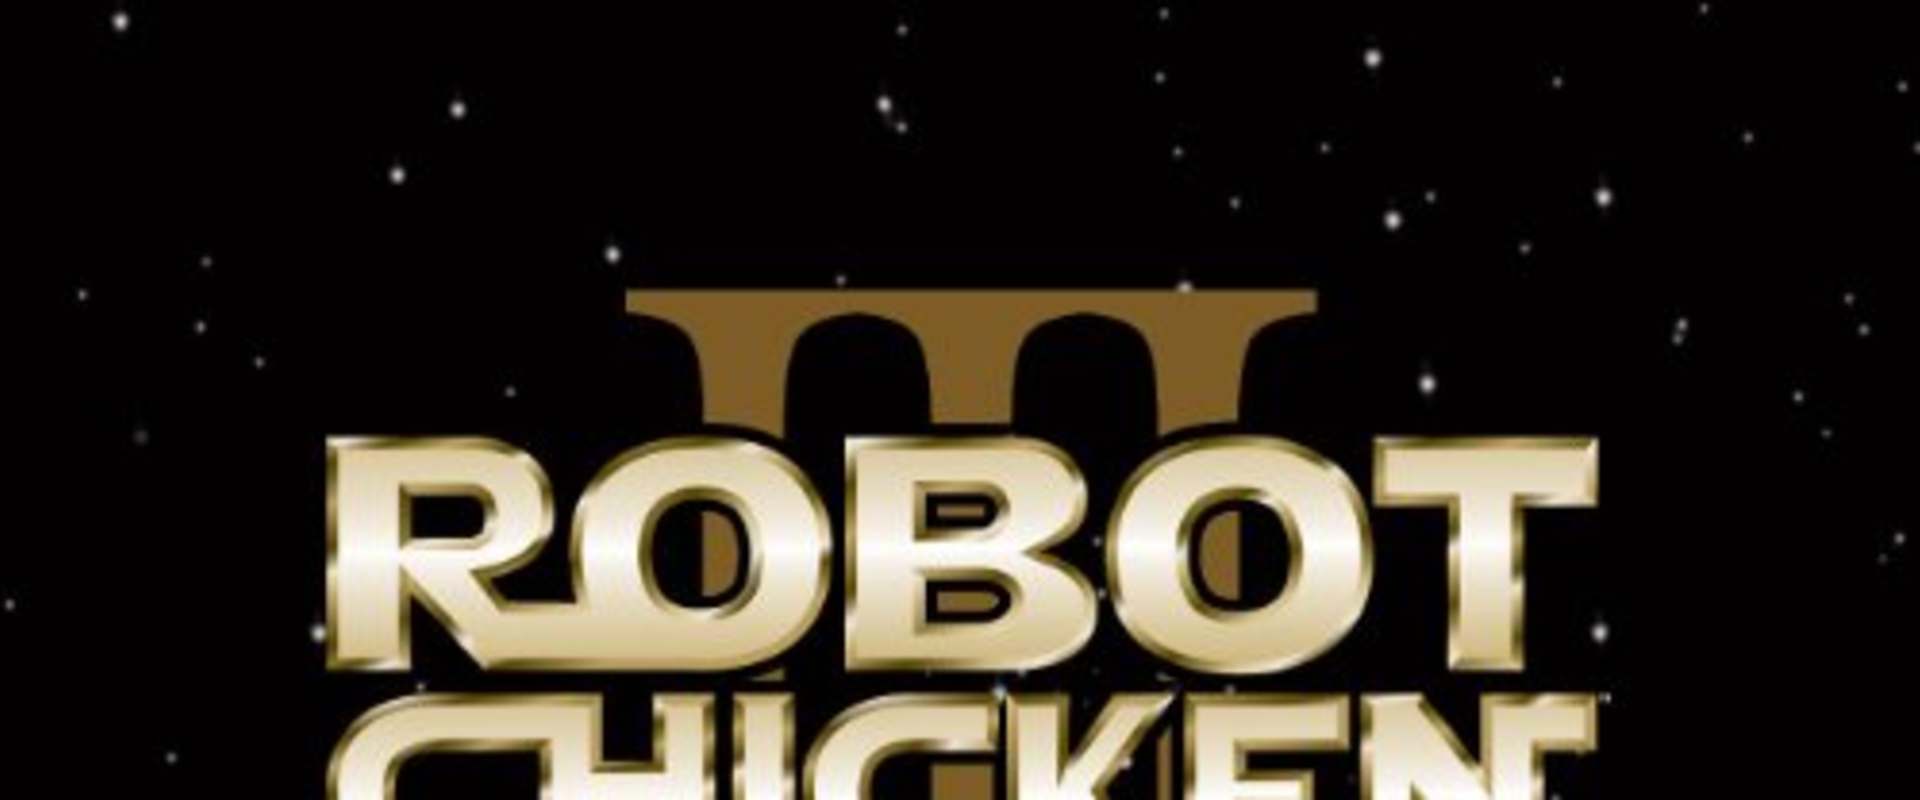 Robot Chicken: Star Wars Episode III background 1